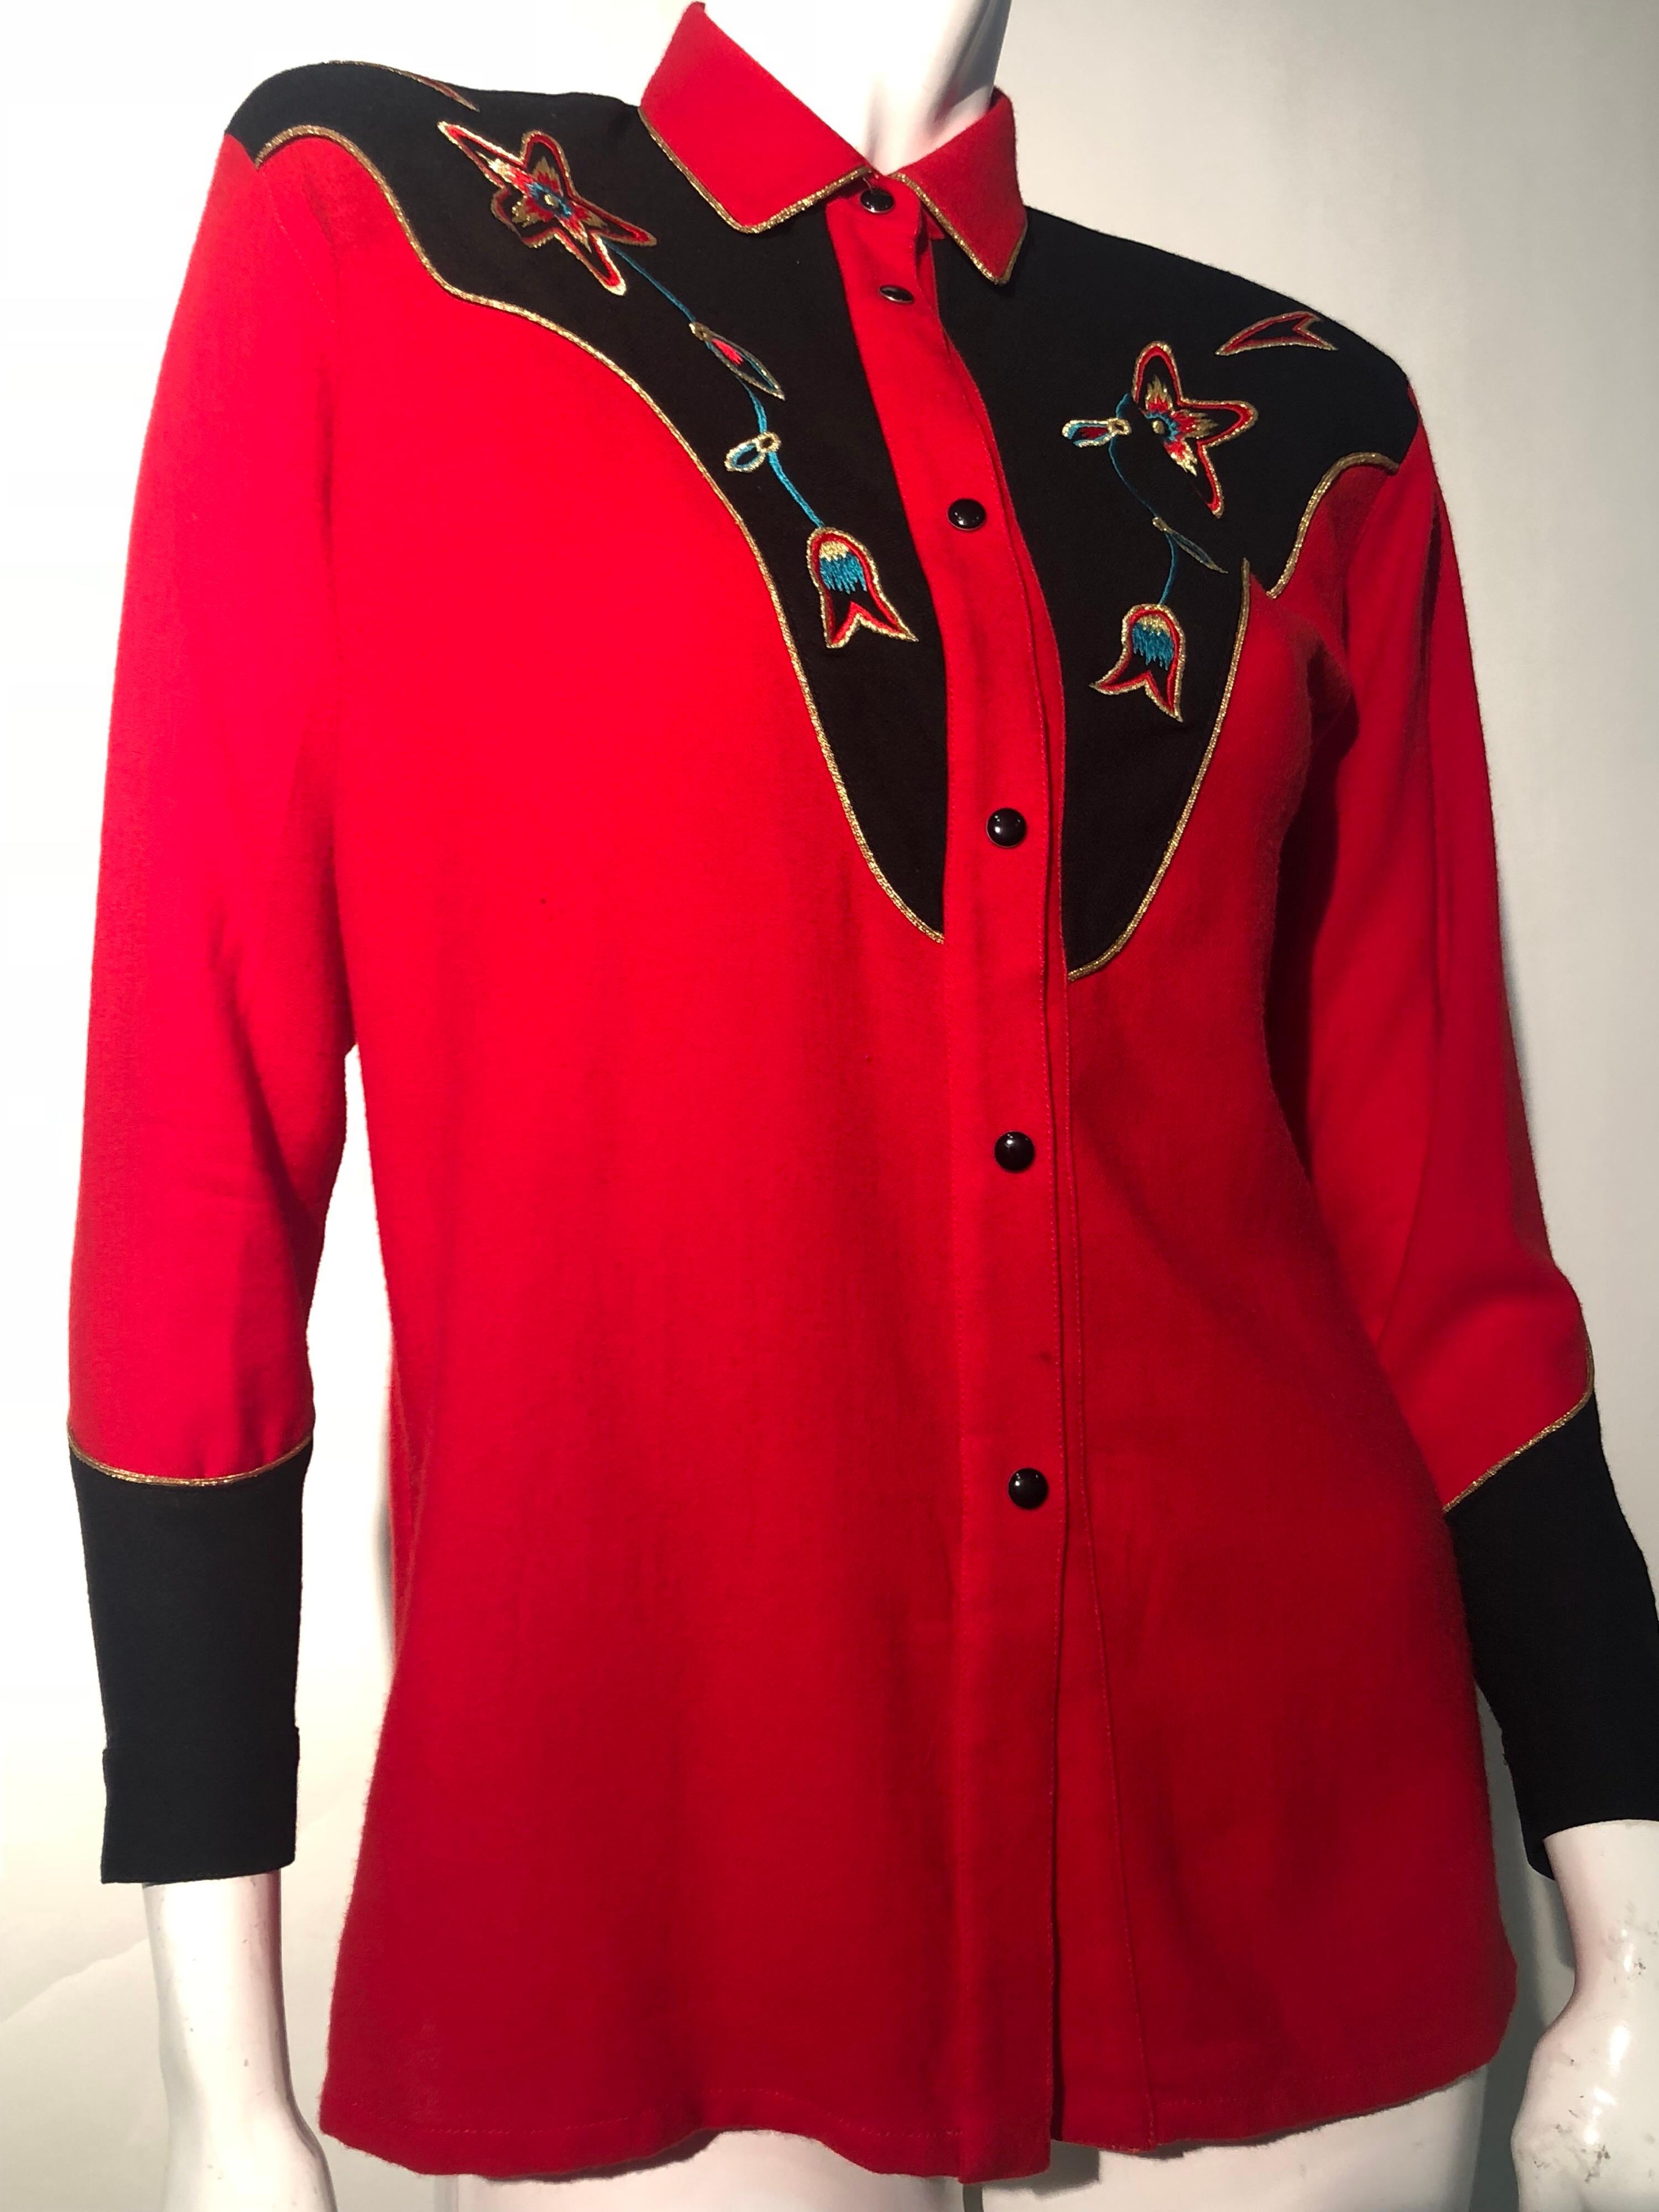 Ein wunderschönes 1980 Kansai Yamamoto Westernhemd mit besticktem Latz in rot und schwarz. Inspiriert vom Rockabilly-Stil und der Musik der 1950er Jahre. Wolle mit seidener Stickerei und strukturierten Schulterpolstern